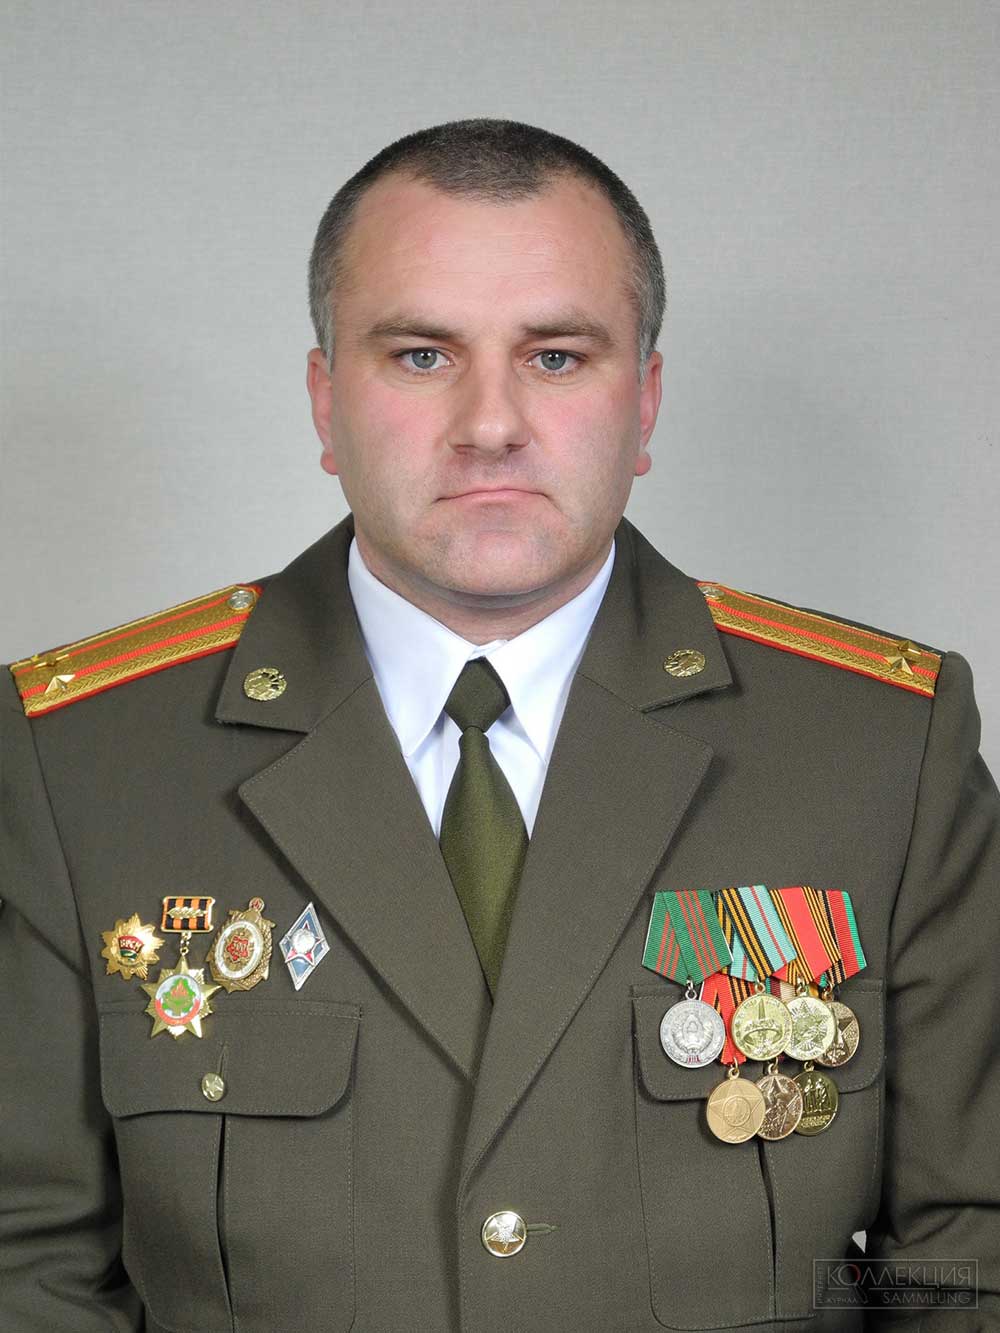 Подполковник А.П. Трубеко, бывший командир 52 оспб со знаком «За актыўны пошук» в 2011 году